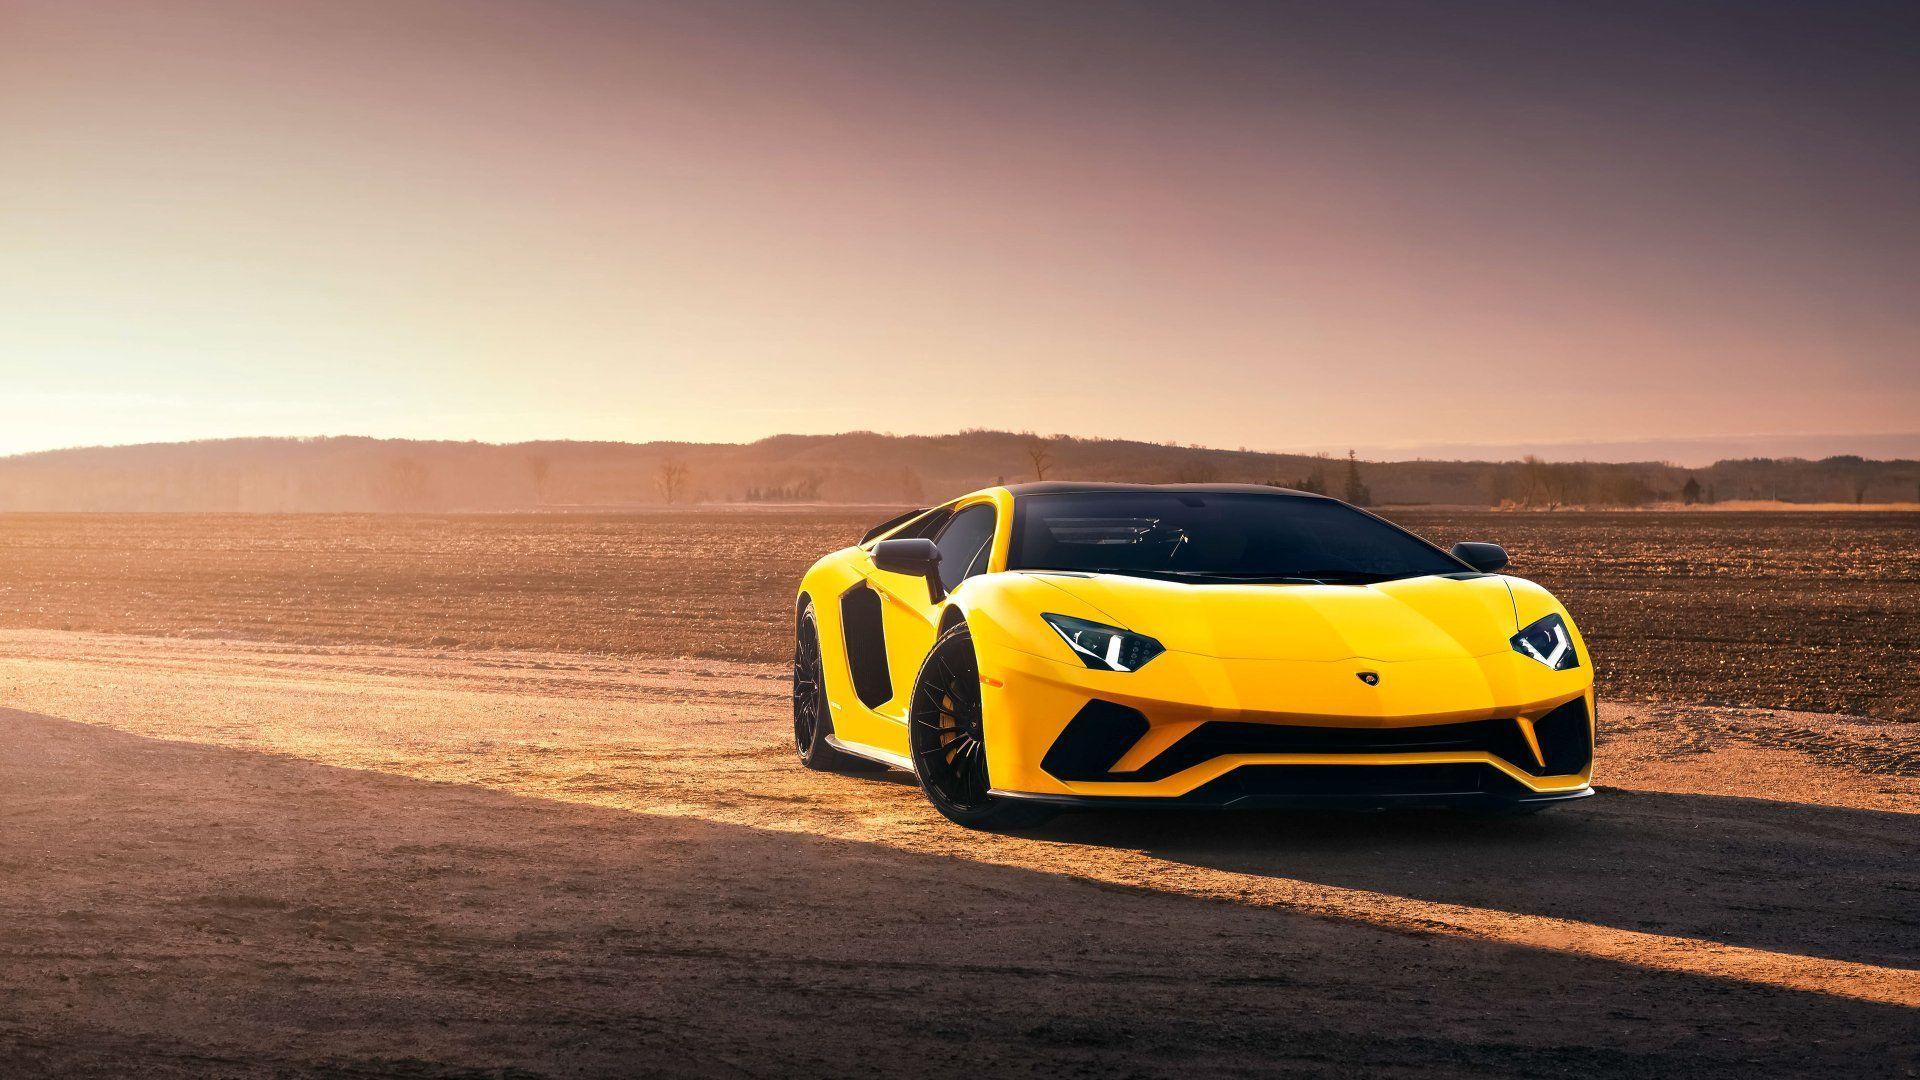 Lamborghini On Road Wallpapers - Top Free Lamborghini On Road Backgrounds - WallpaperAccess